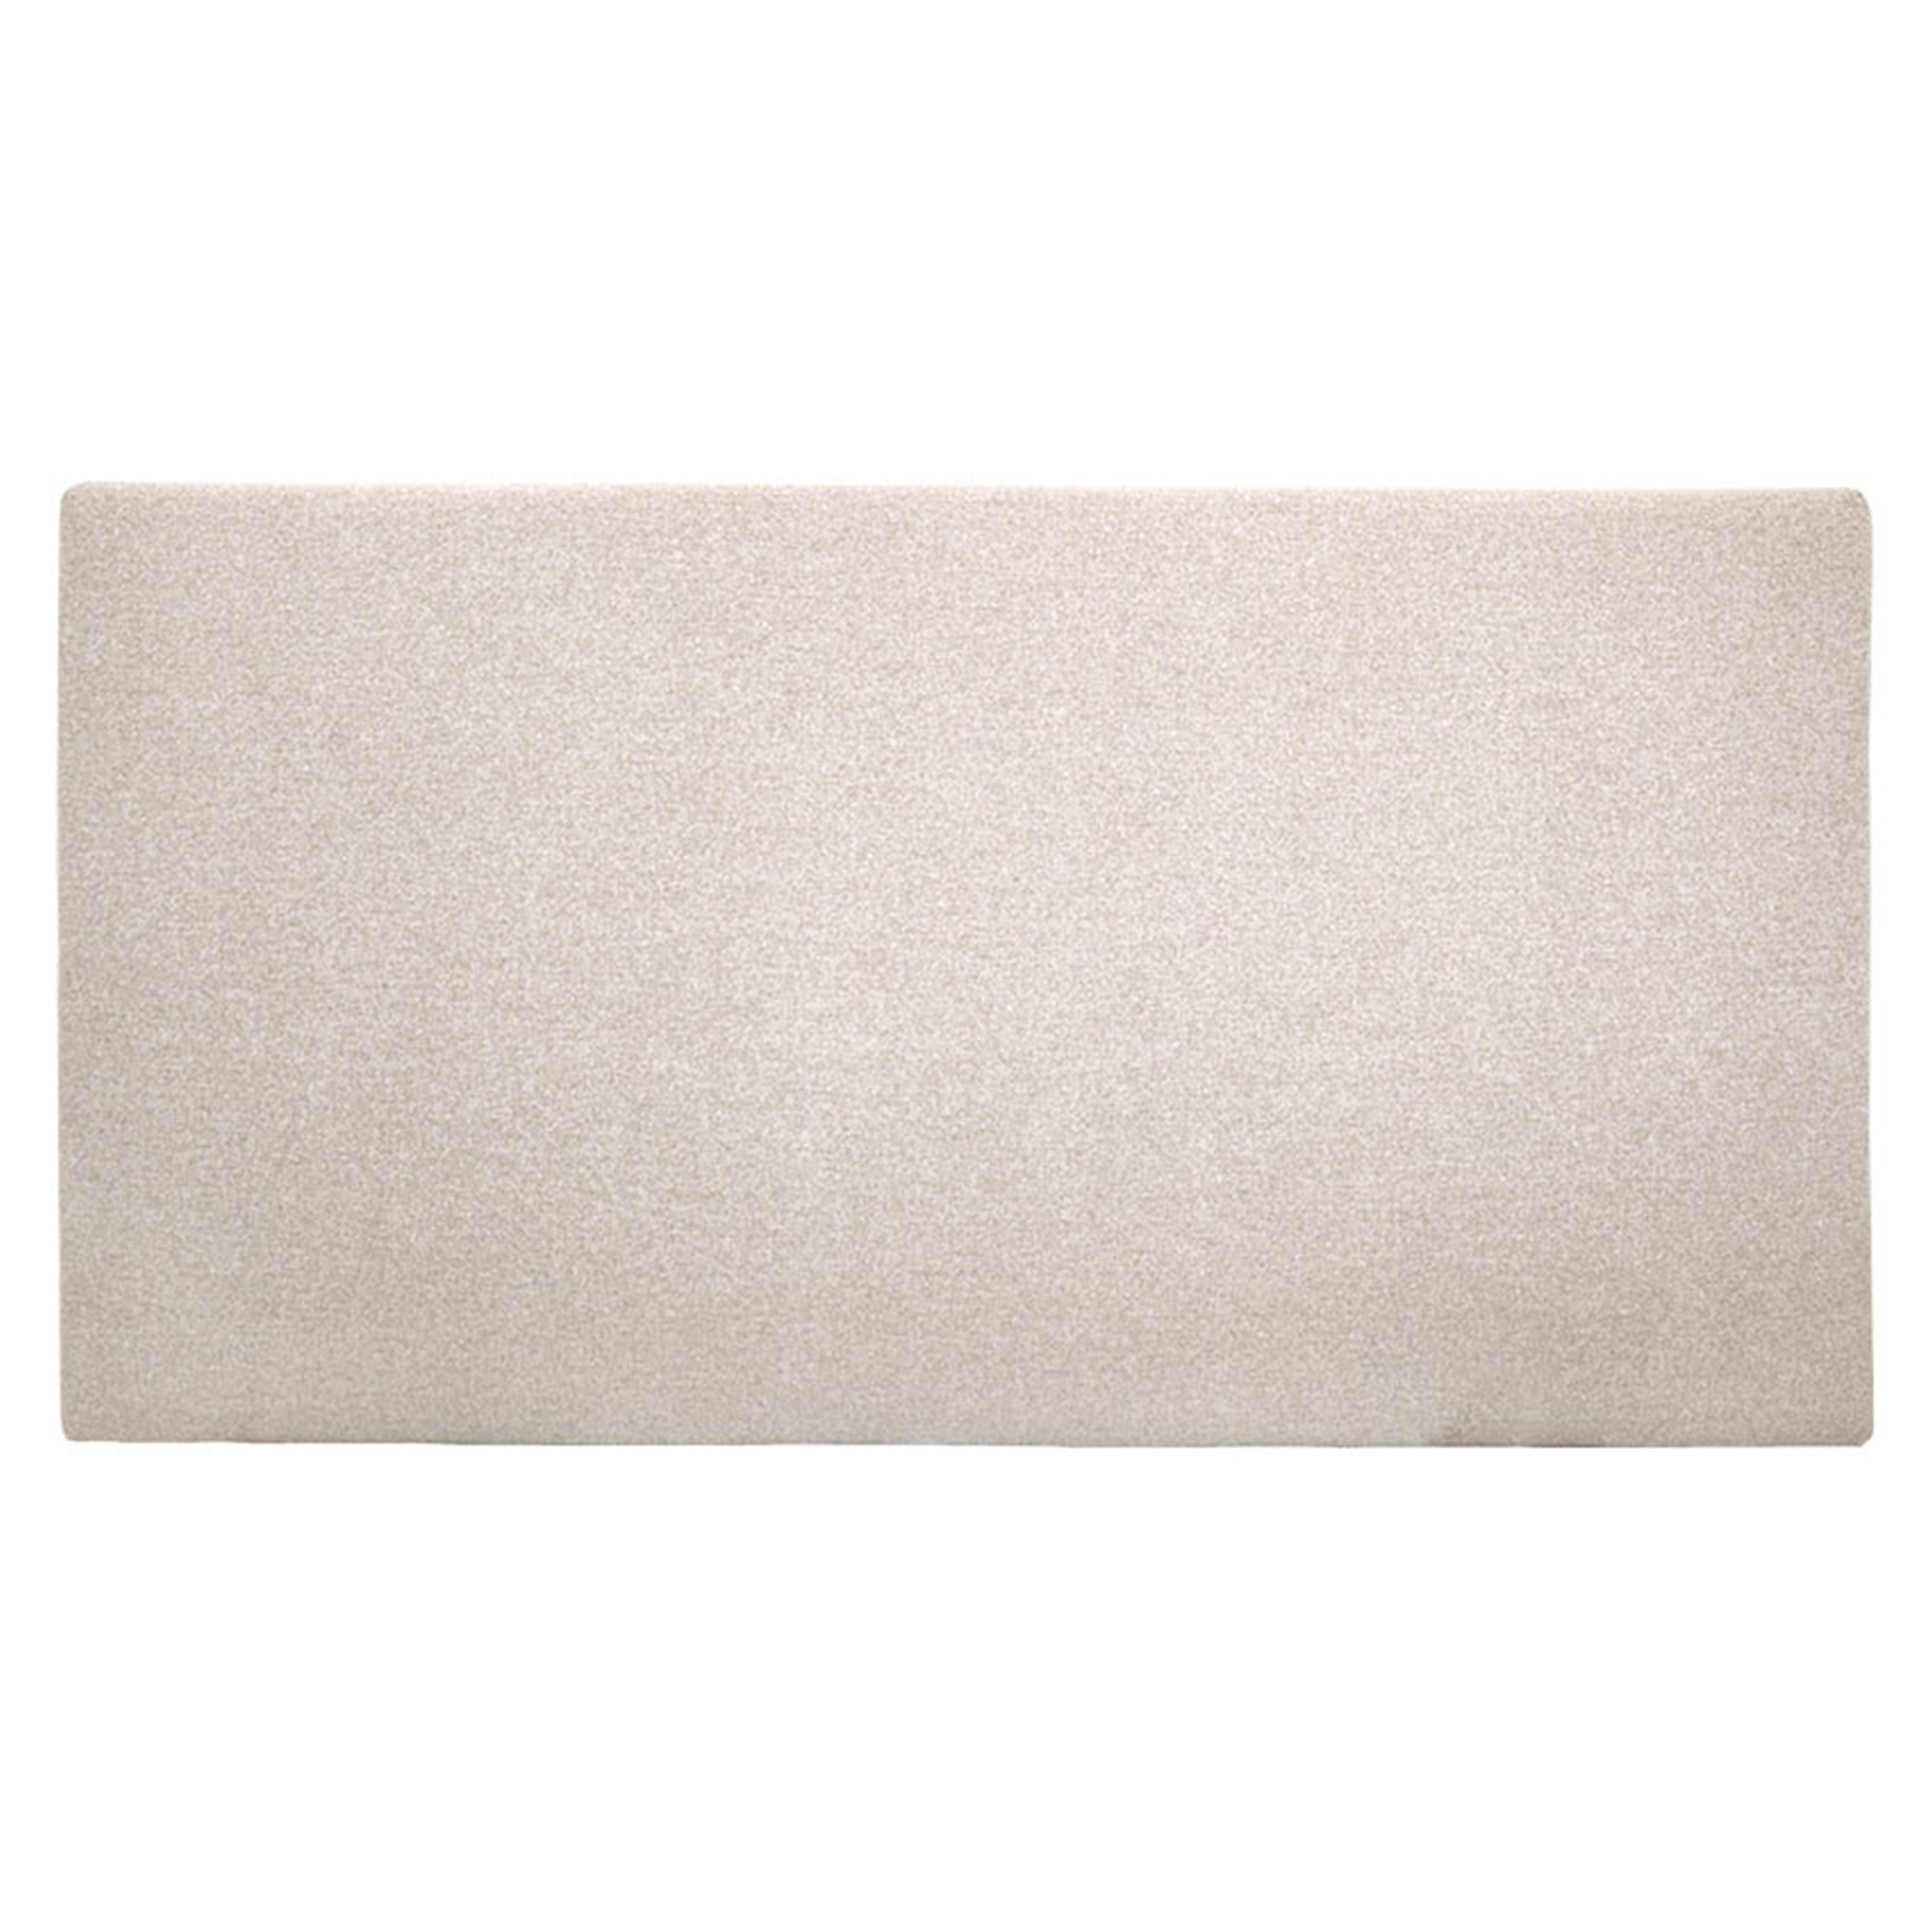 Tête de lit polyester lisse couleur beige 160x80cm